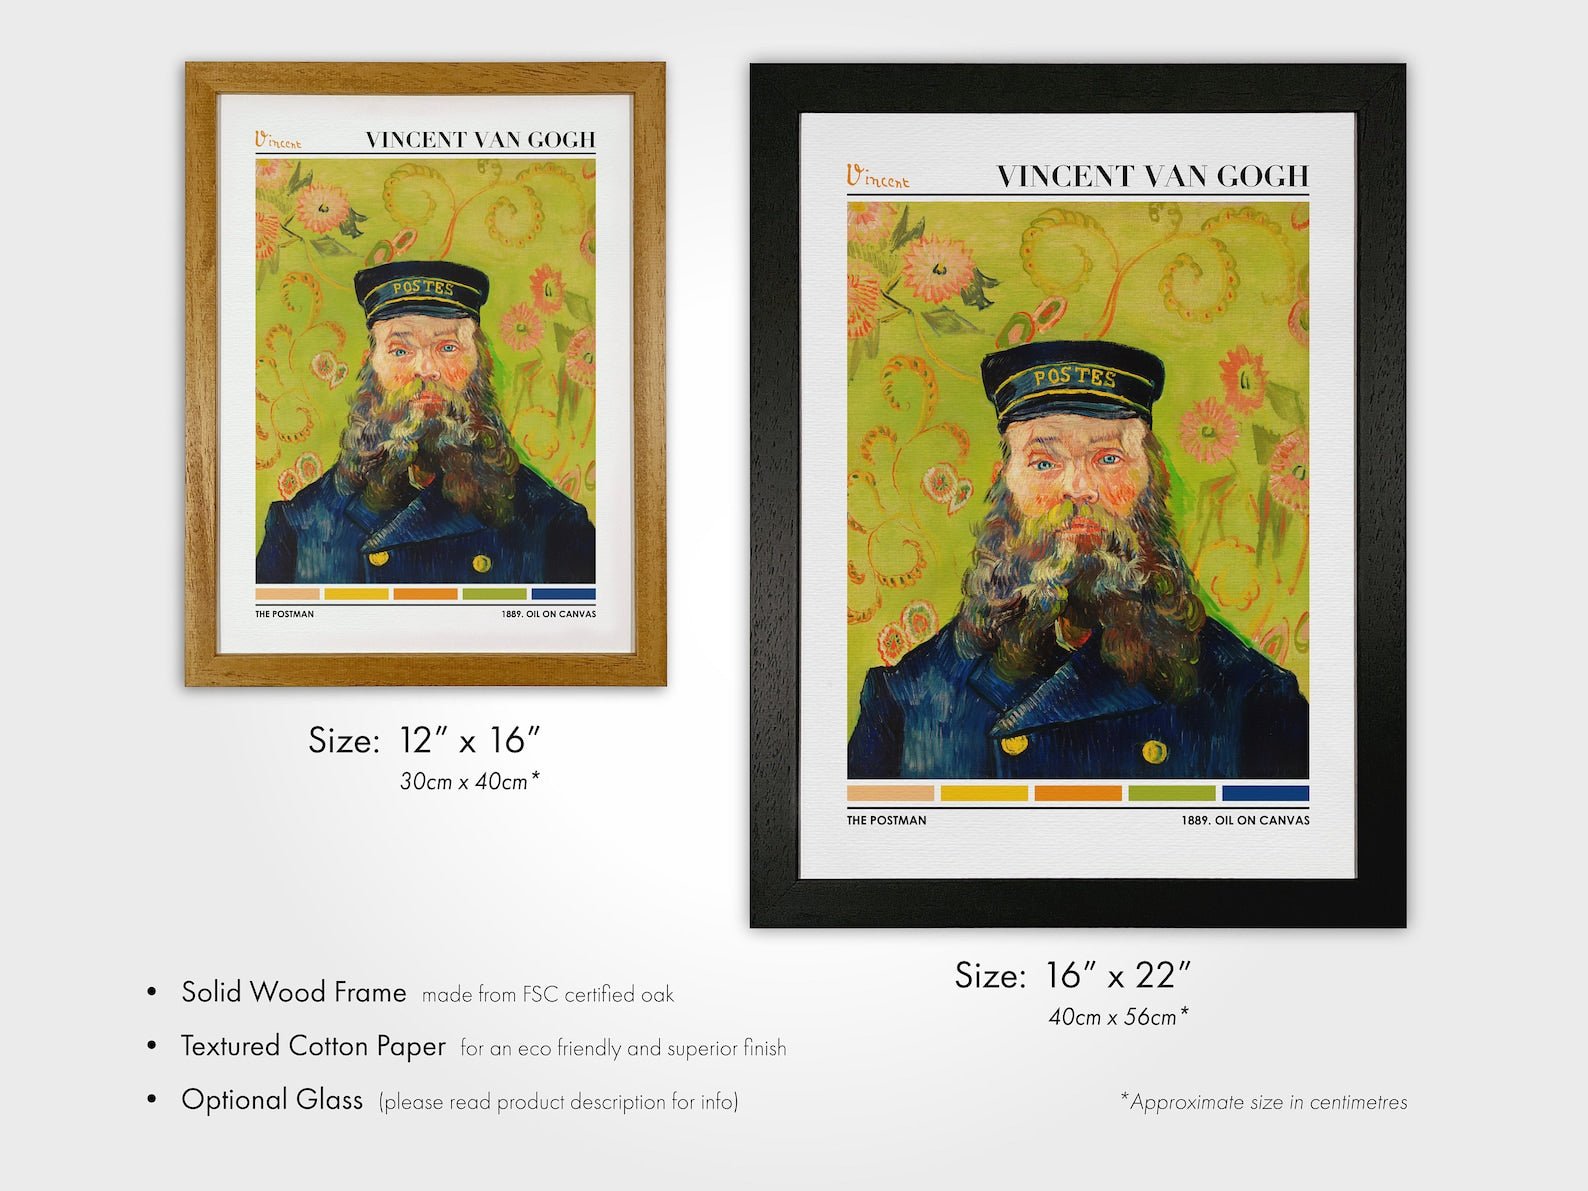 VINCENT VAN GOGH - The Postman (Color Palette Print) - Pathos Studio - Art Prints